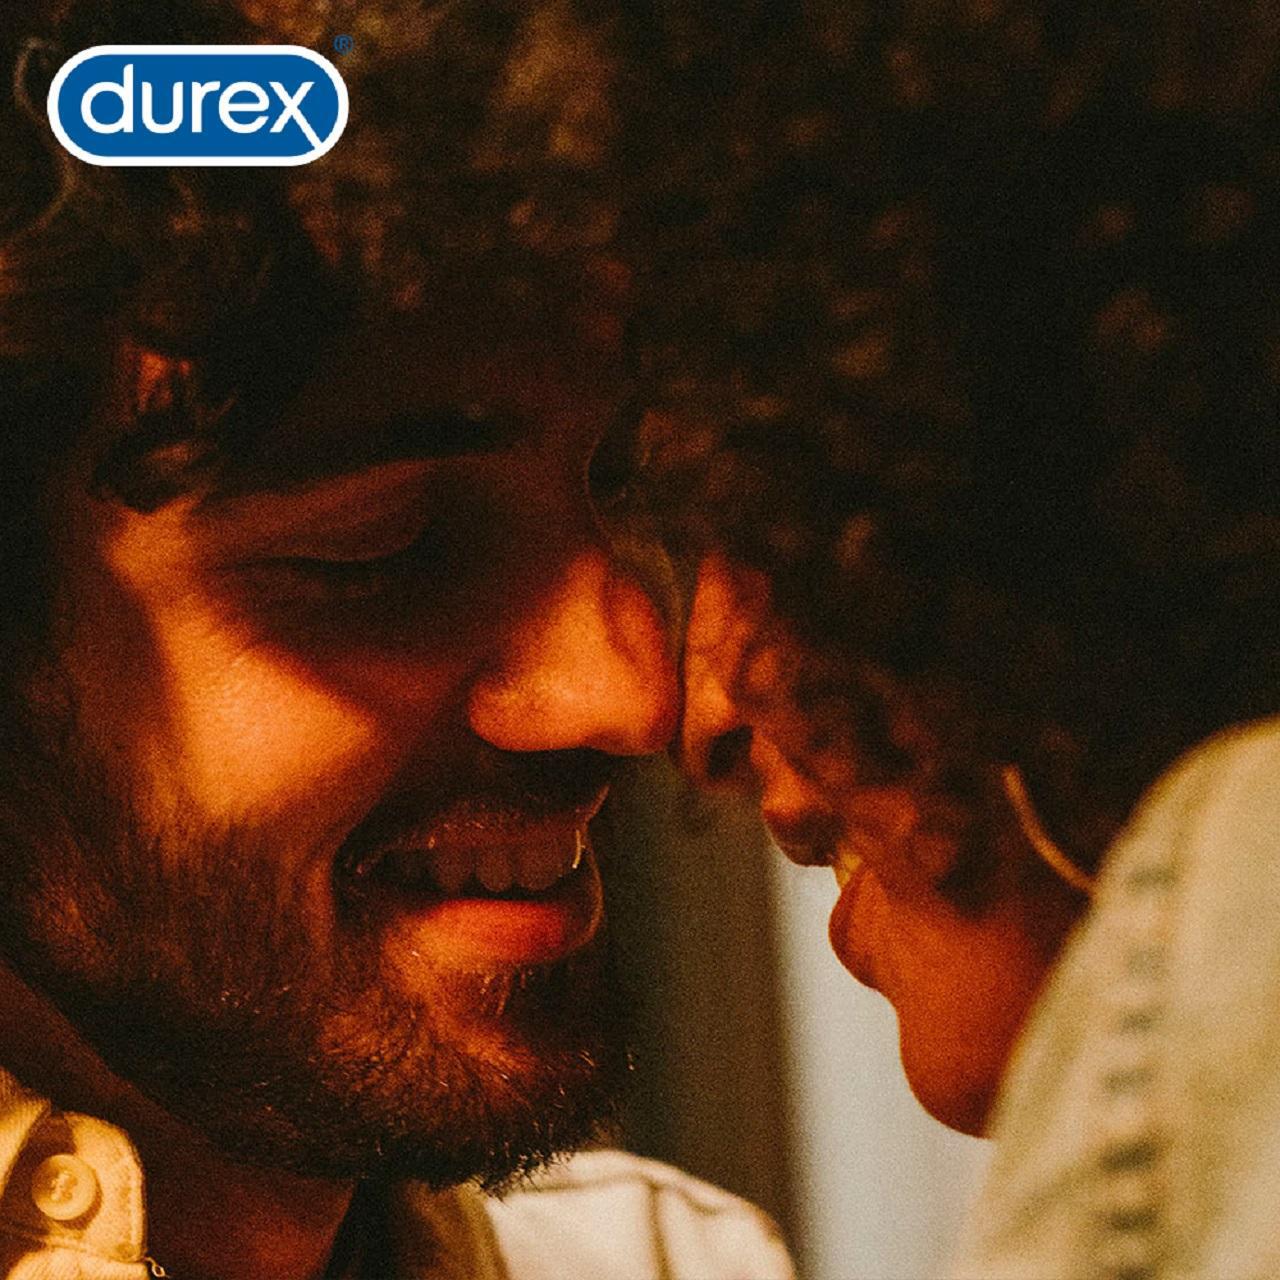 Durex Extra Large Comfort 12 Condoms 12 per pack